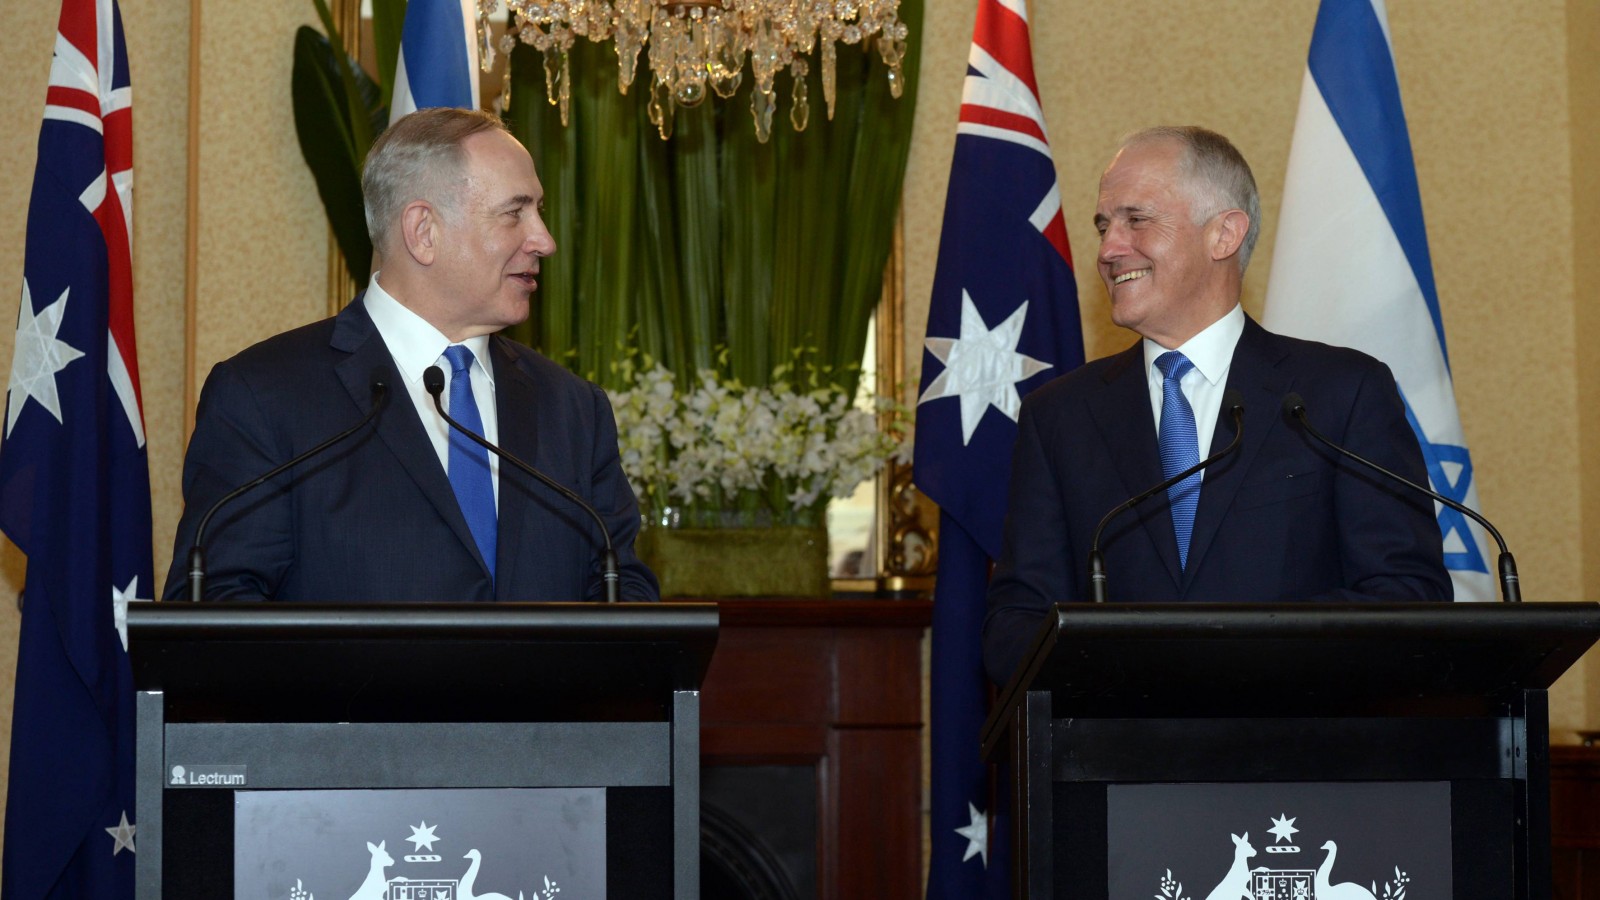 ראש ממשלת אוסטרליה מלקולם טורנבול בימים יפים יותר (צילום: חיים זך / לע״מ).